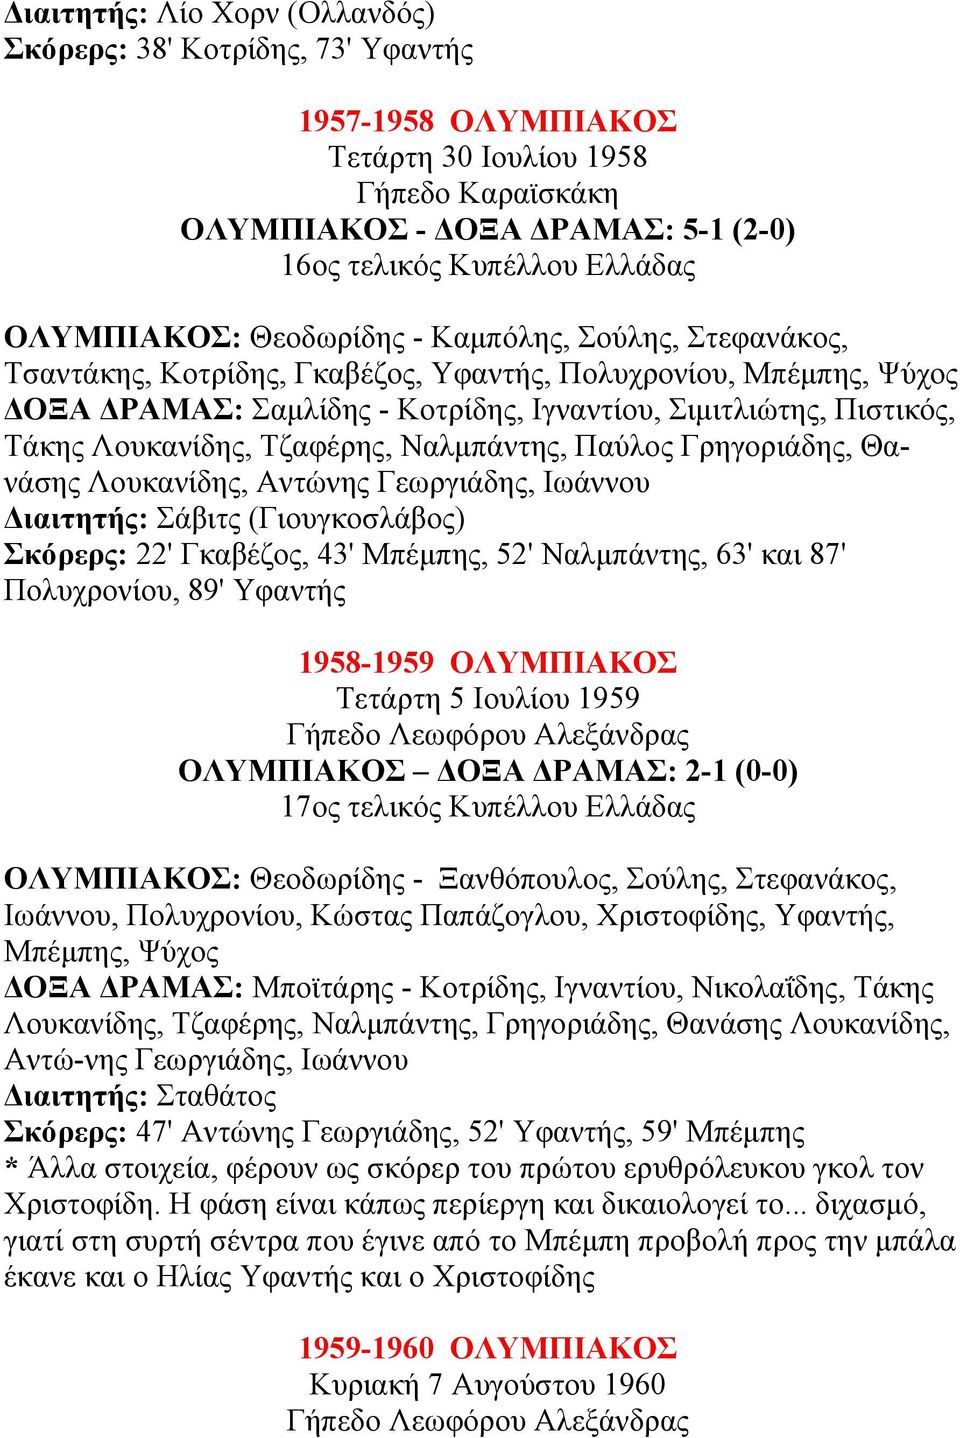 Ναλµπάντης, Παύλος Γρηγοριάδης, Θανάσης Λoυκανίδης, Aντώνης Γεωργιάδης, Ιωάννoυ ιαιτητής: Σάβιτς (Γιουγκοσλάβος) Σκόρερς: 22' Γκαβέζος, 43' Μπέµπης, 52' Ναλµπάντης, 63' και 87' Πολυχρονίου, 89'